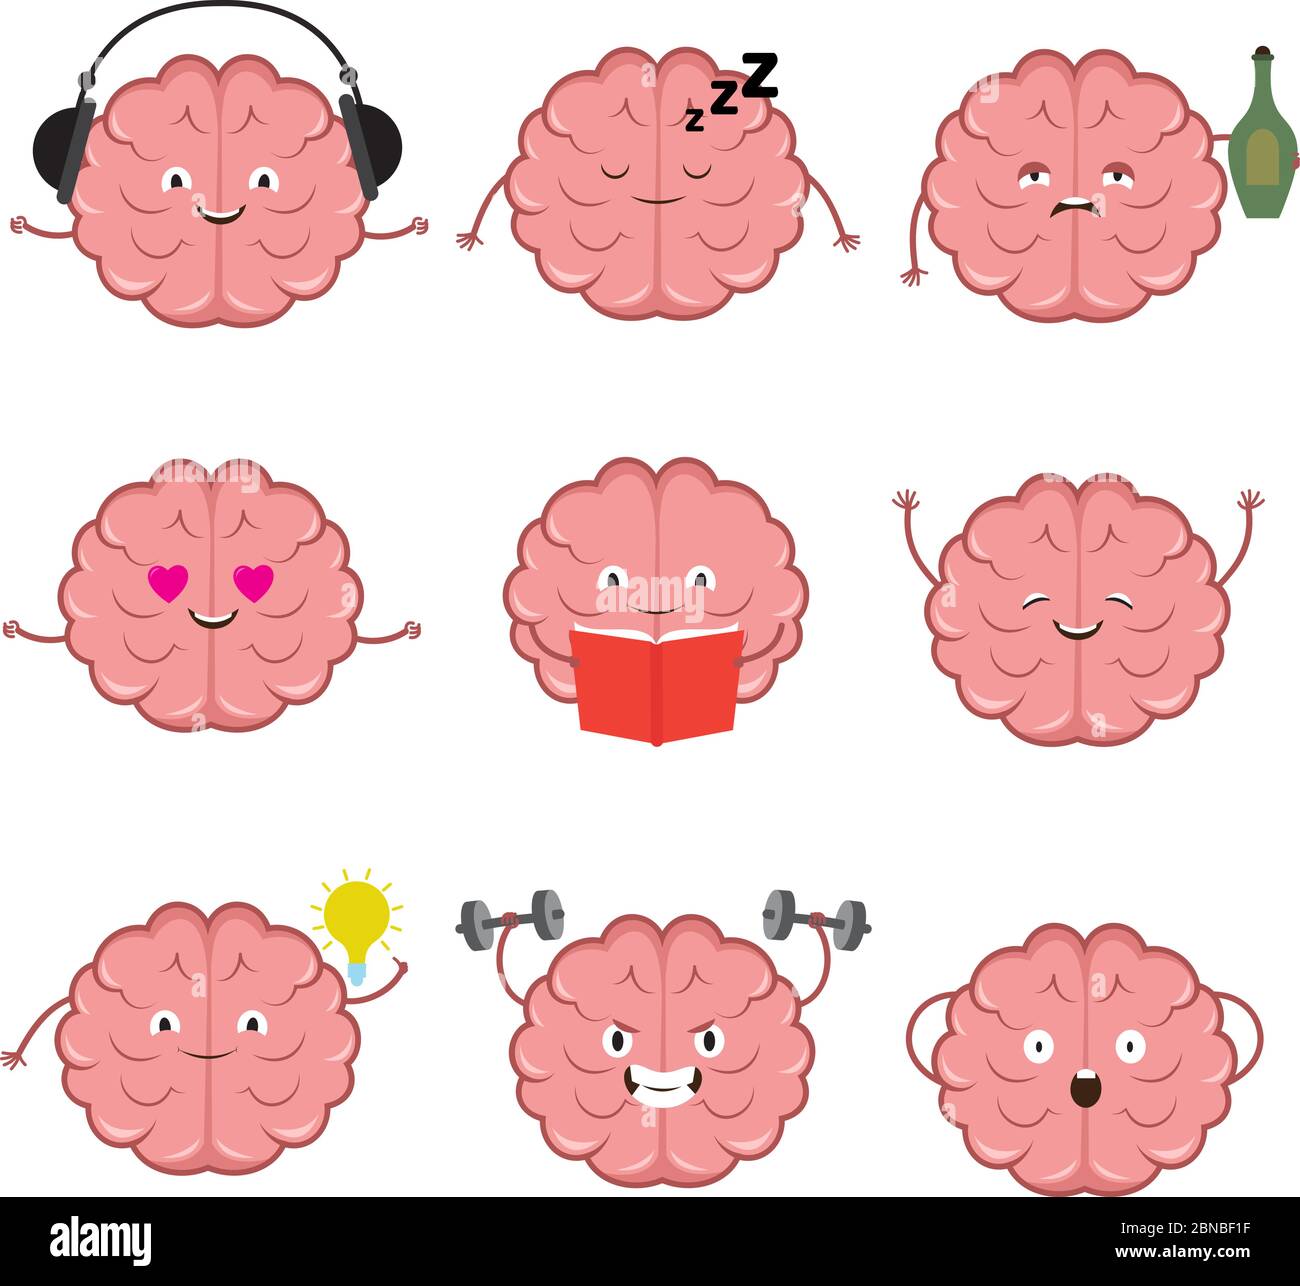 Cervello divertente, forte, sano e intelligente. Brains emozioni vettore cartoni animati set di caratteri. Illustrazione di cervello divertente, intelligente e ubriaco intelletto Illustrazione Vettoriale